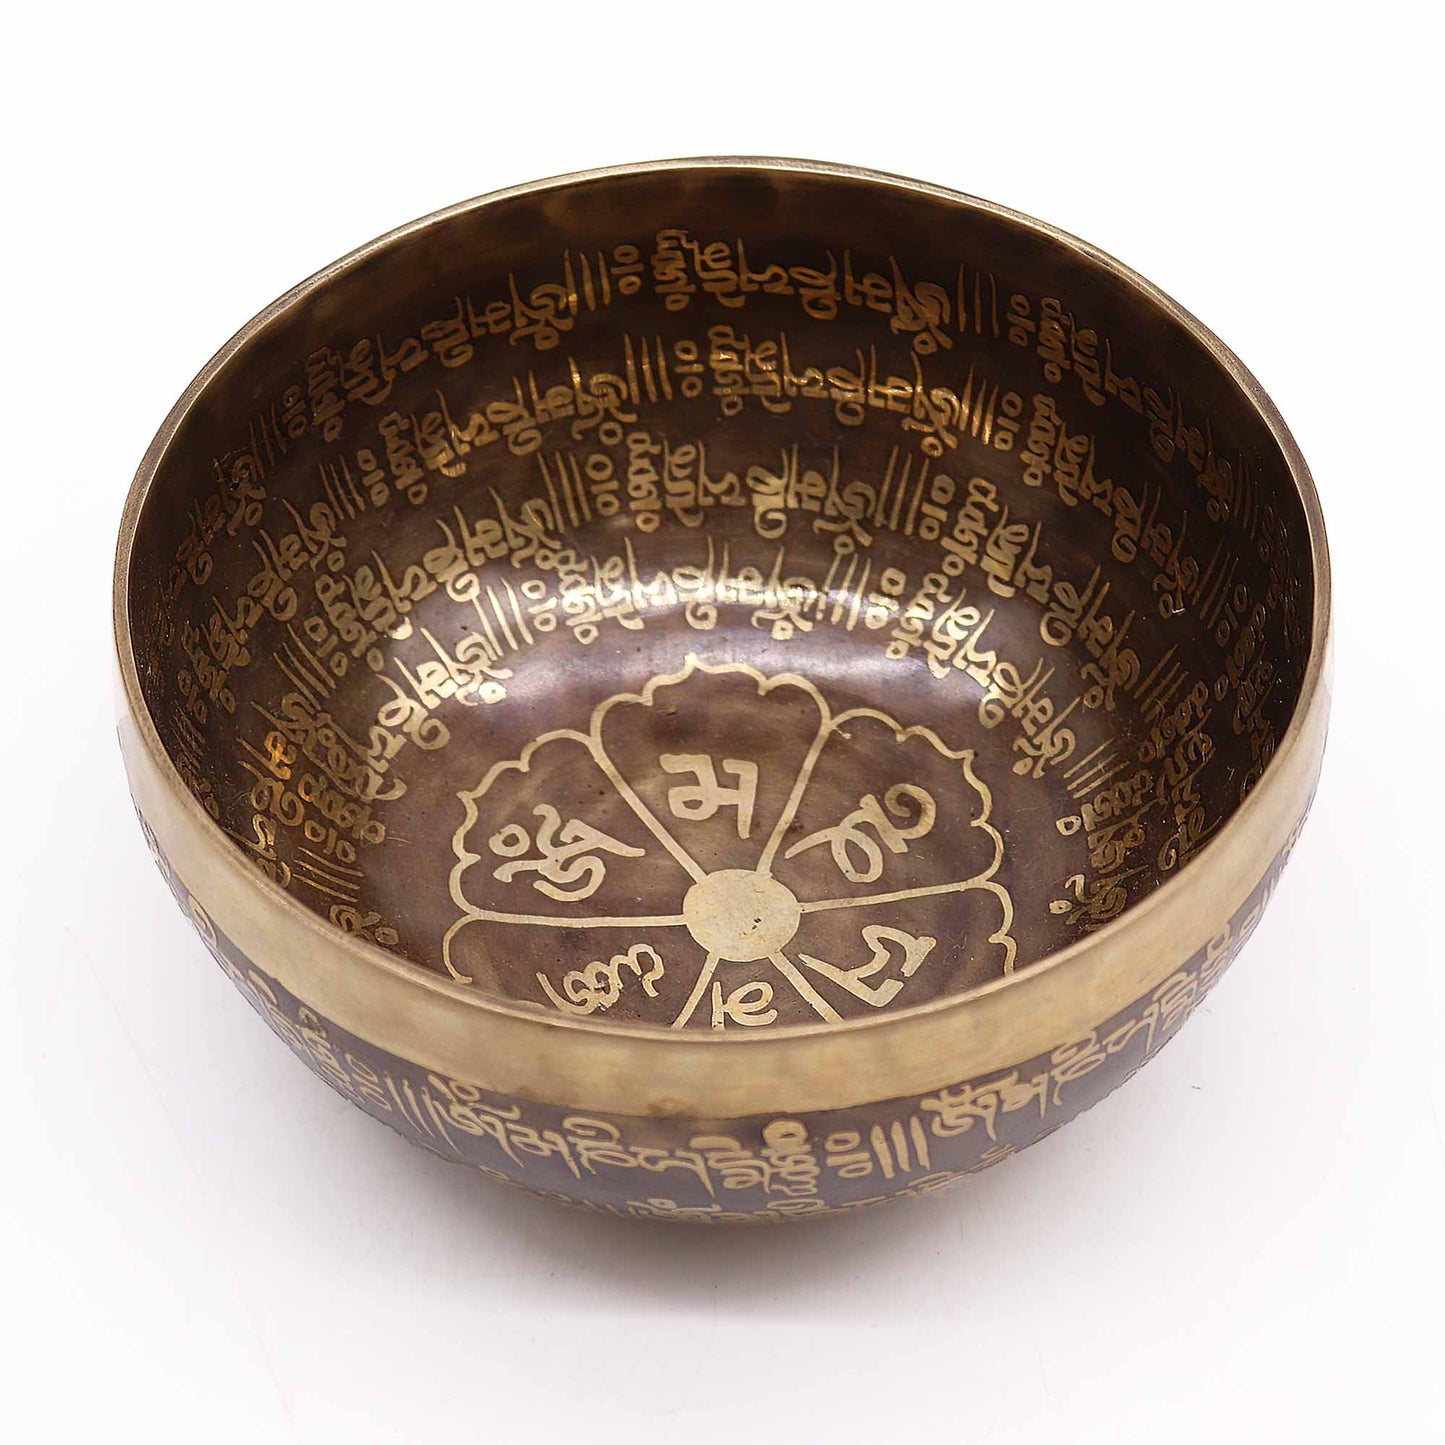 Tibetan Healing Engraved Bowl - 16cm - Mantra